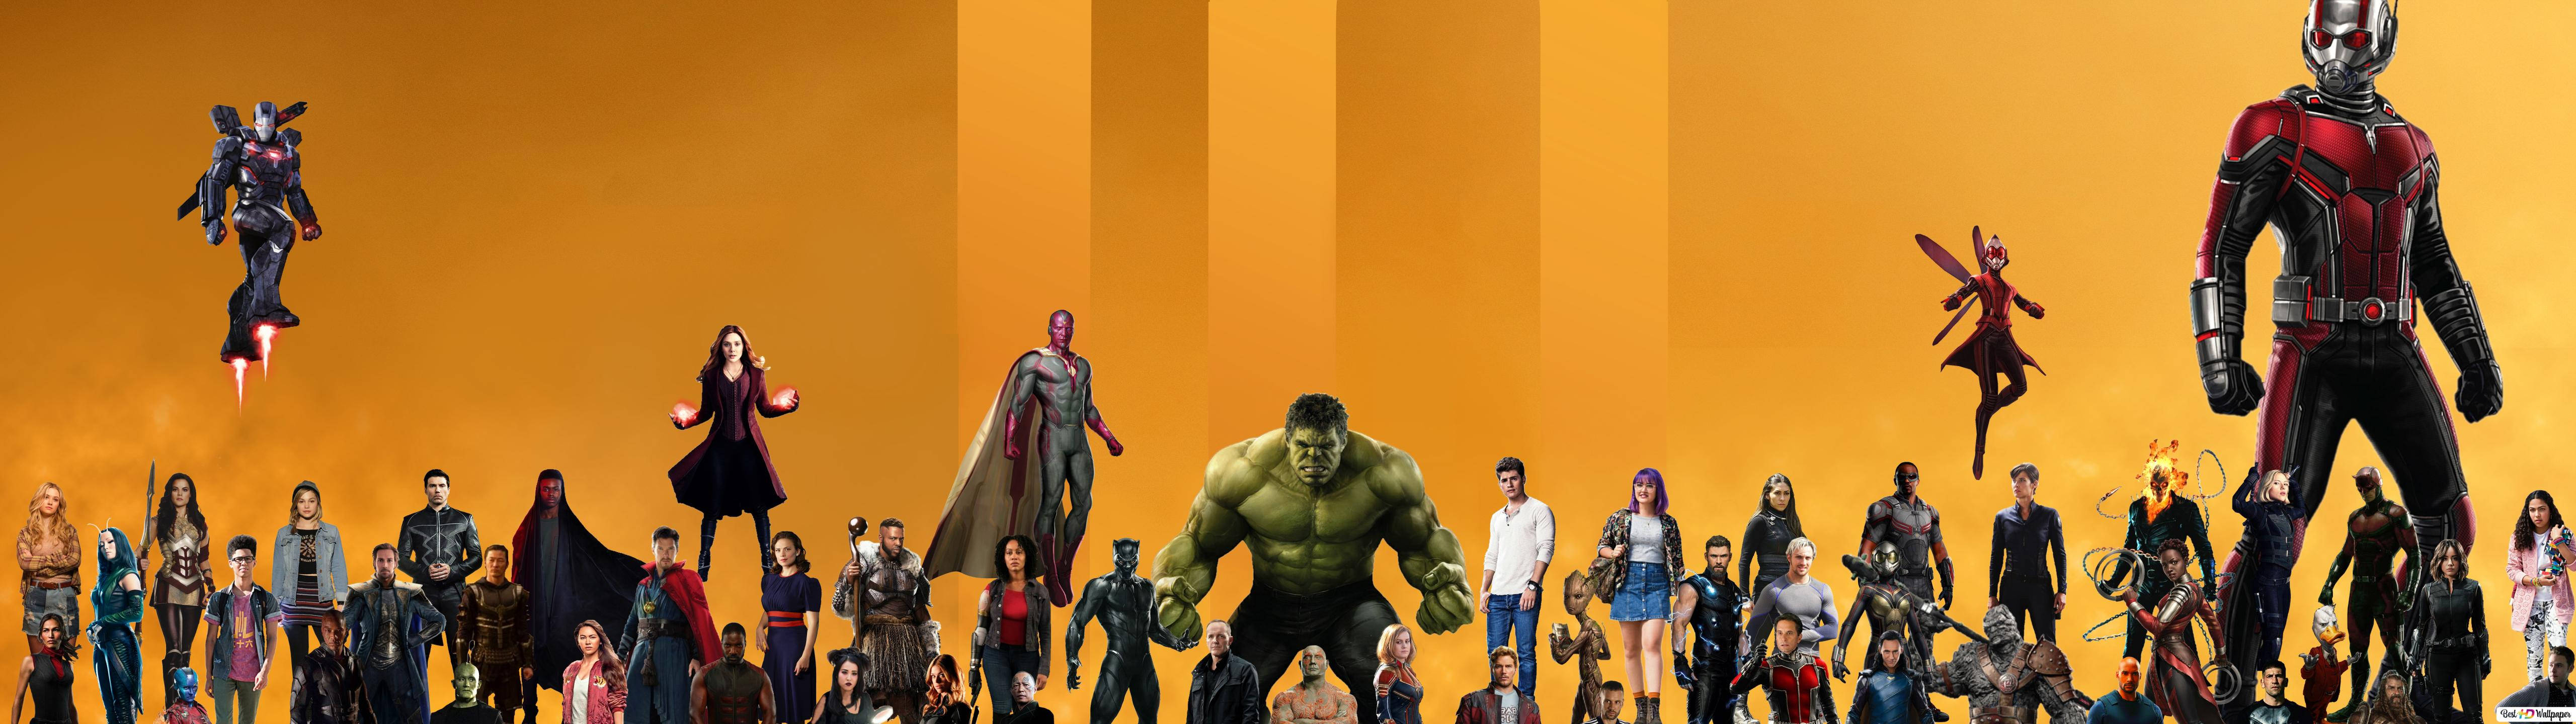 Complete Marvel Heroes 5120 X 1440 Wallpaper